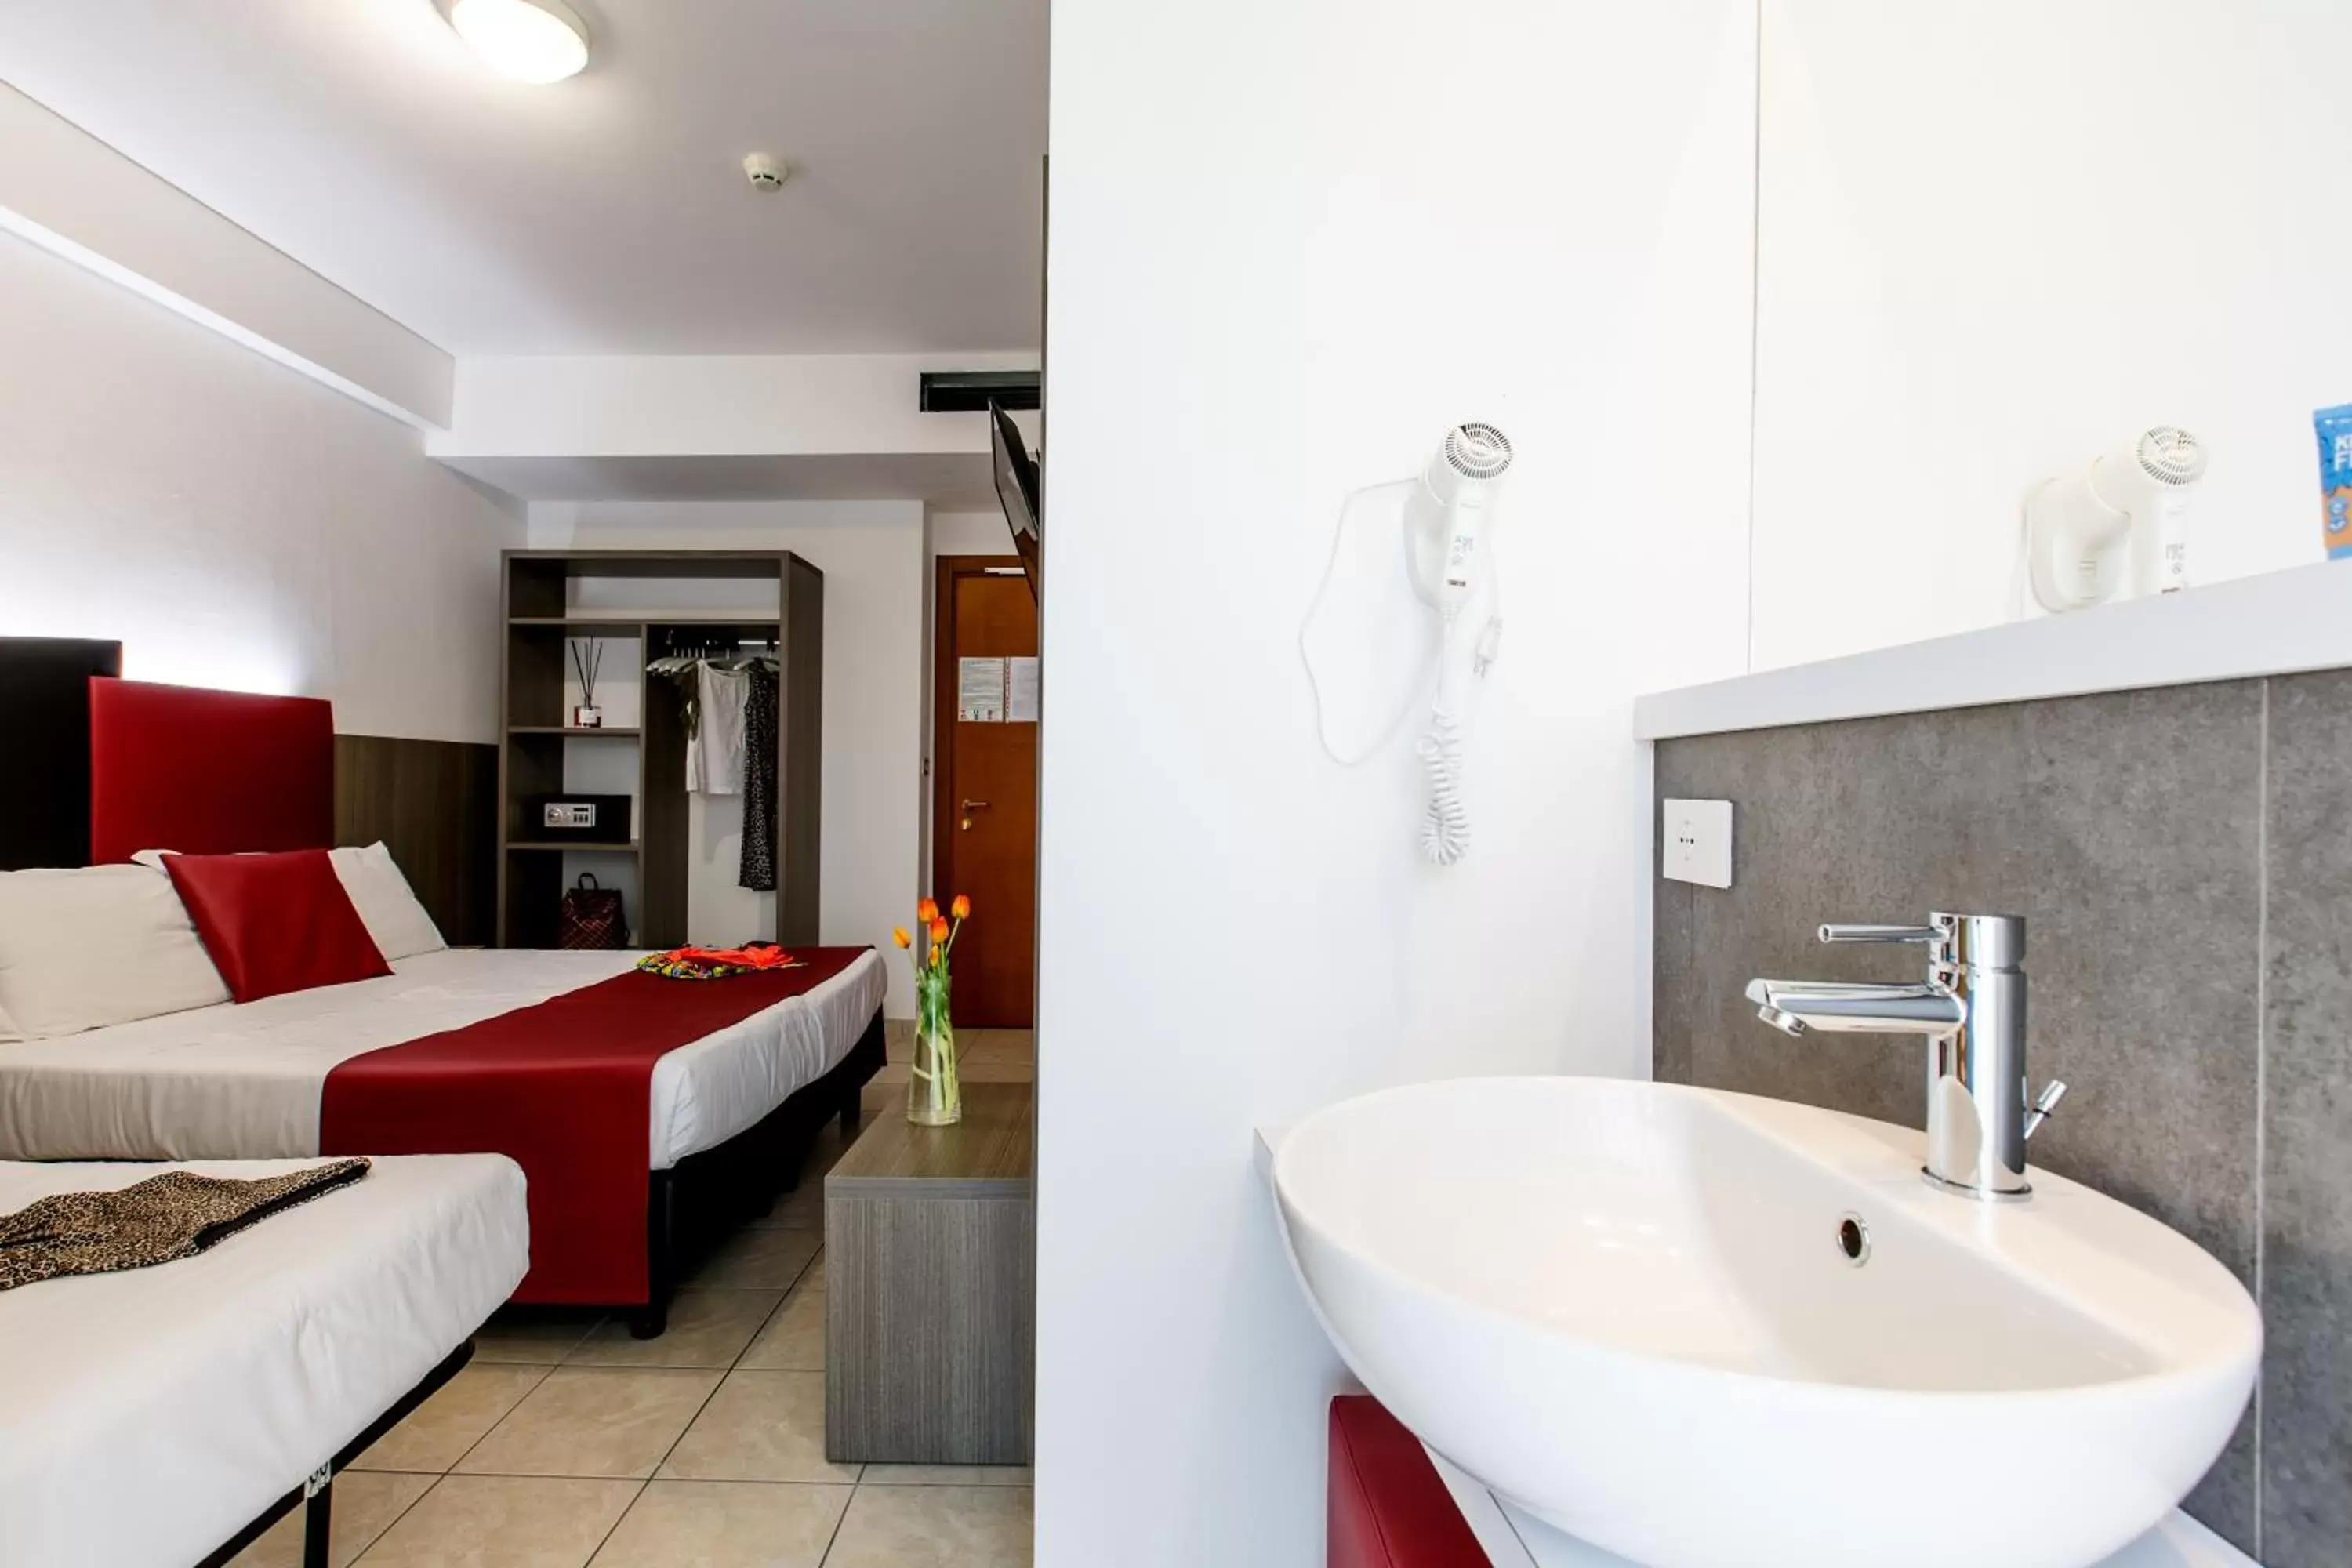 Bedroom, Bathroom in Hotel Grazia Riccione